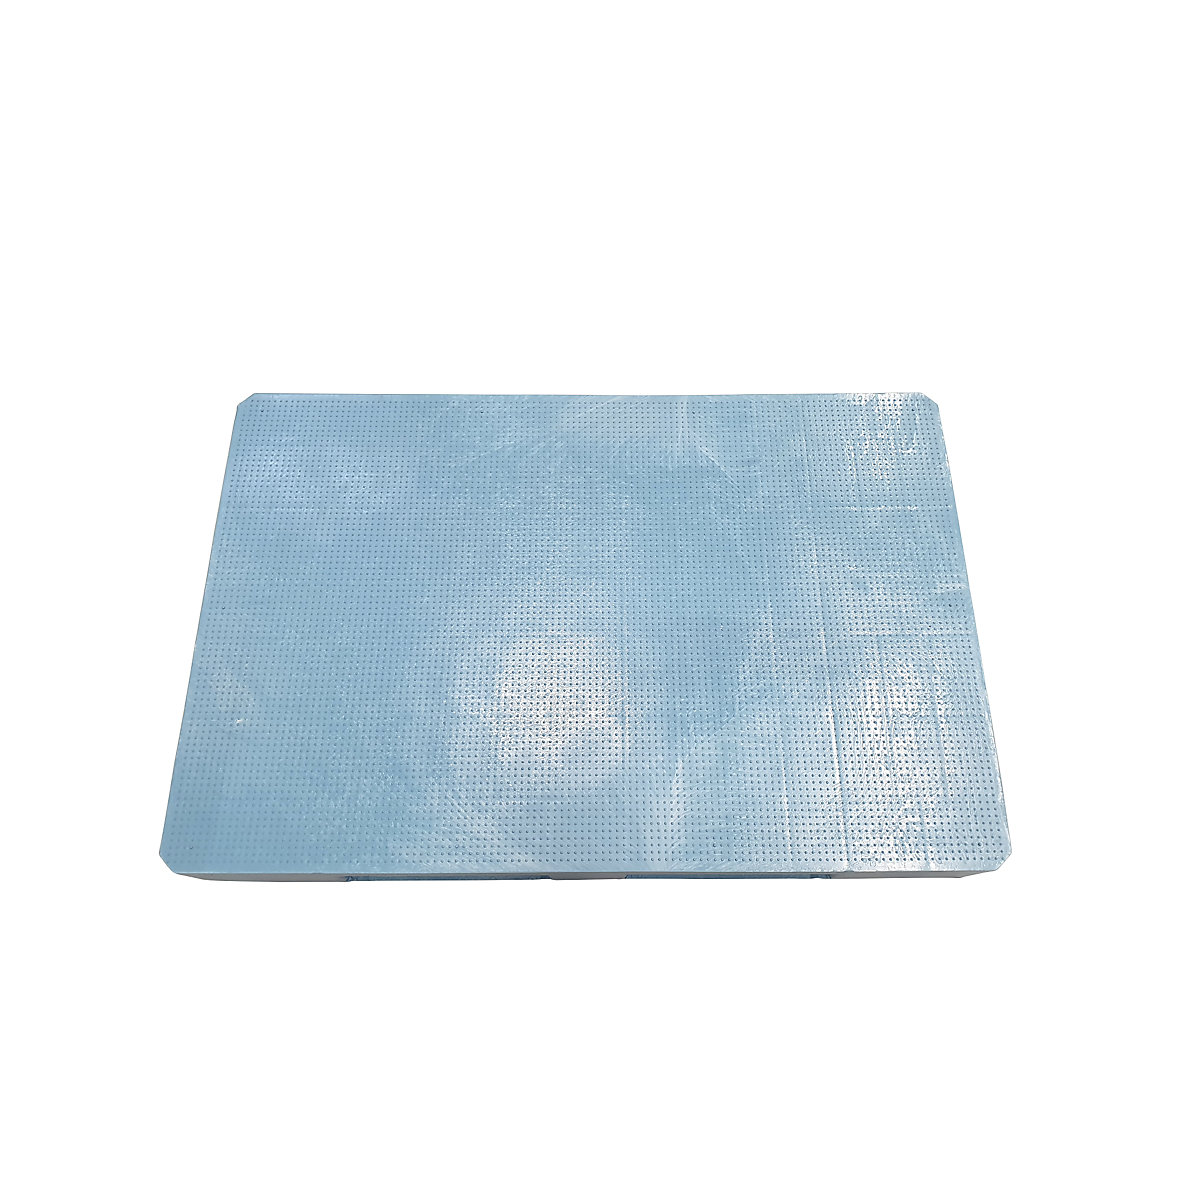 Higijenska EURO paleta, DxŠxV 1200 x 800 x 150 mm, protuklizna izvedba, u plavoj boji, od 10 kom.-1